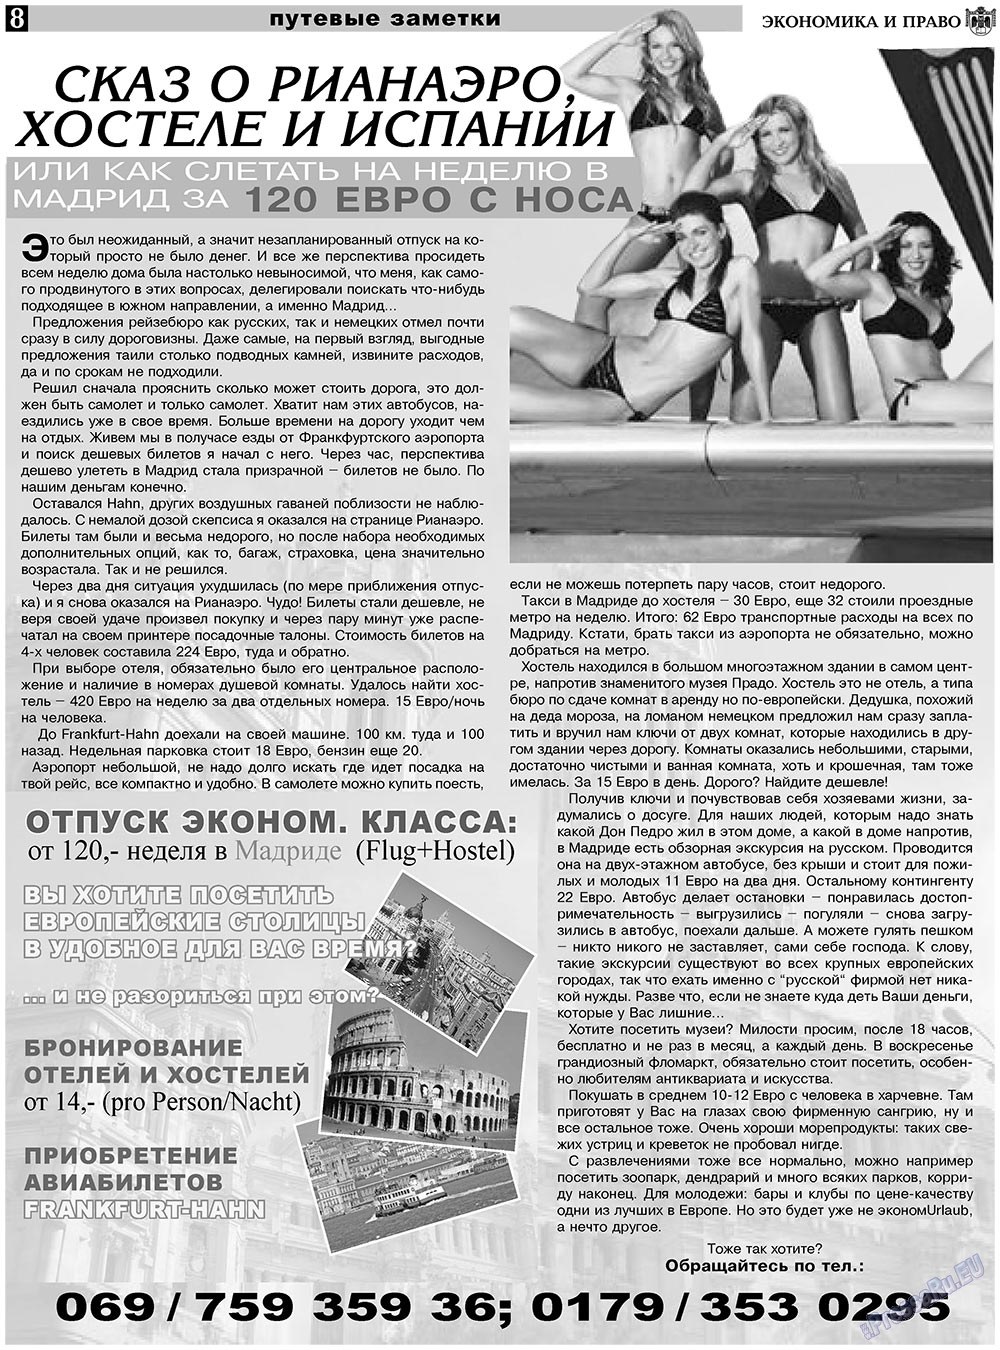 Экономика и право, газета. 2010 №12 стр.8